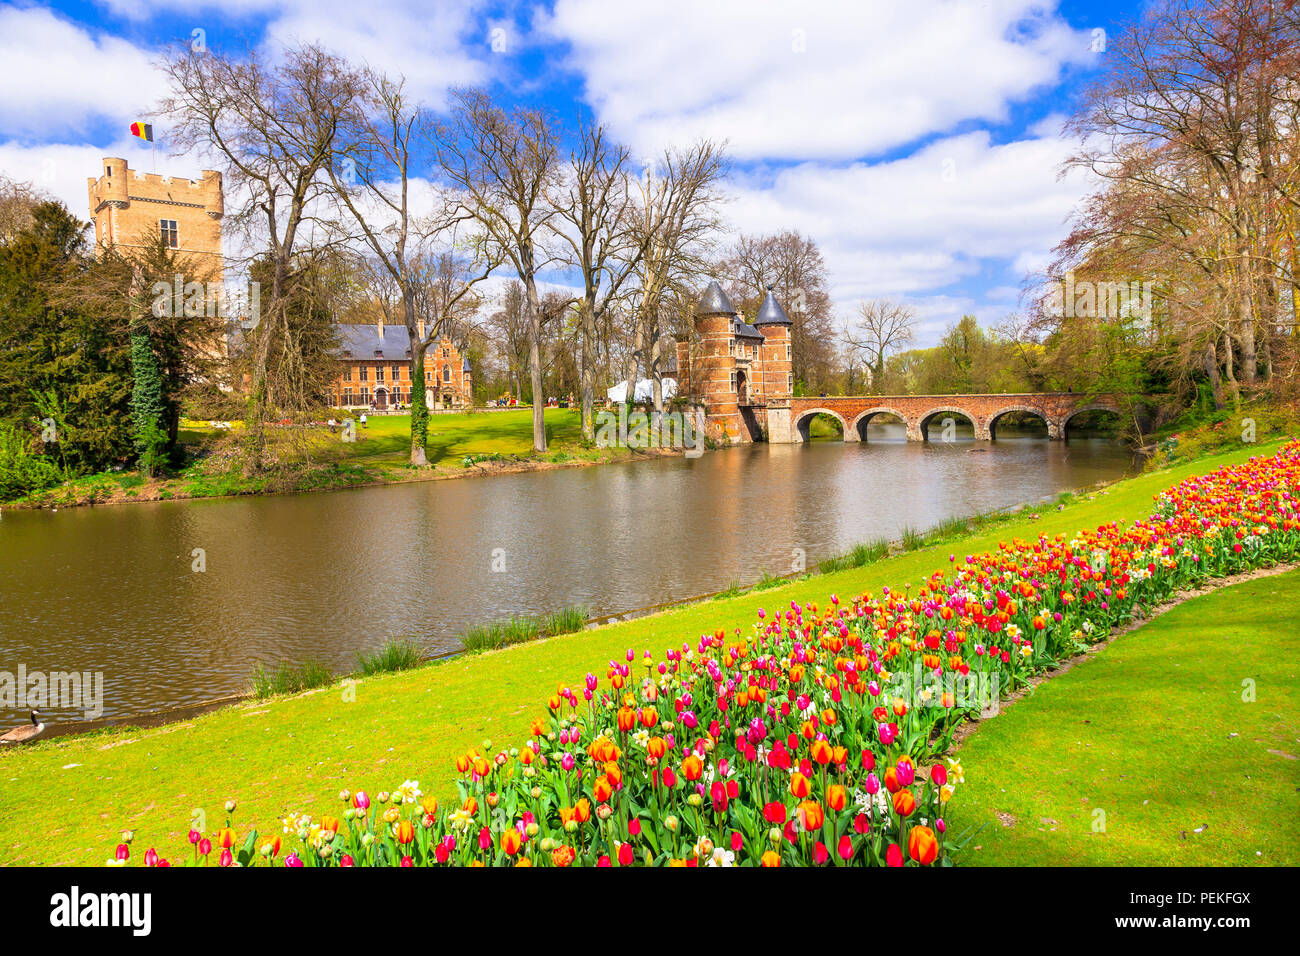 Schöne Groot-Bijgaarden, mit der alten Burg, die Brücke und die blühenden Tulpen, Belgien. Stockfoto